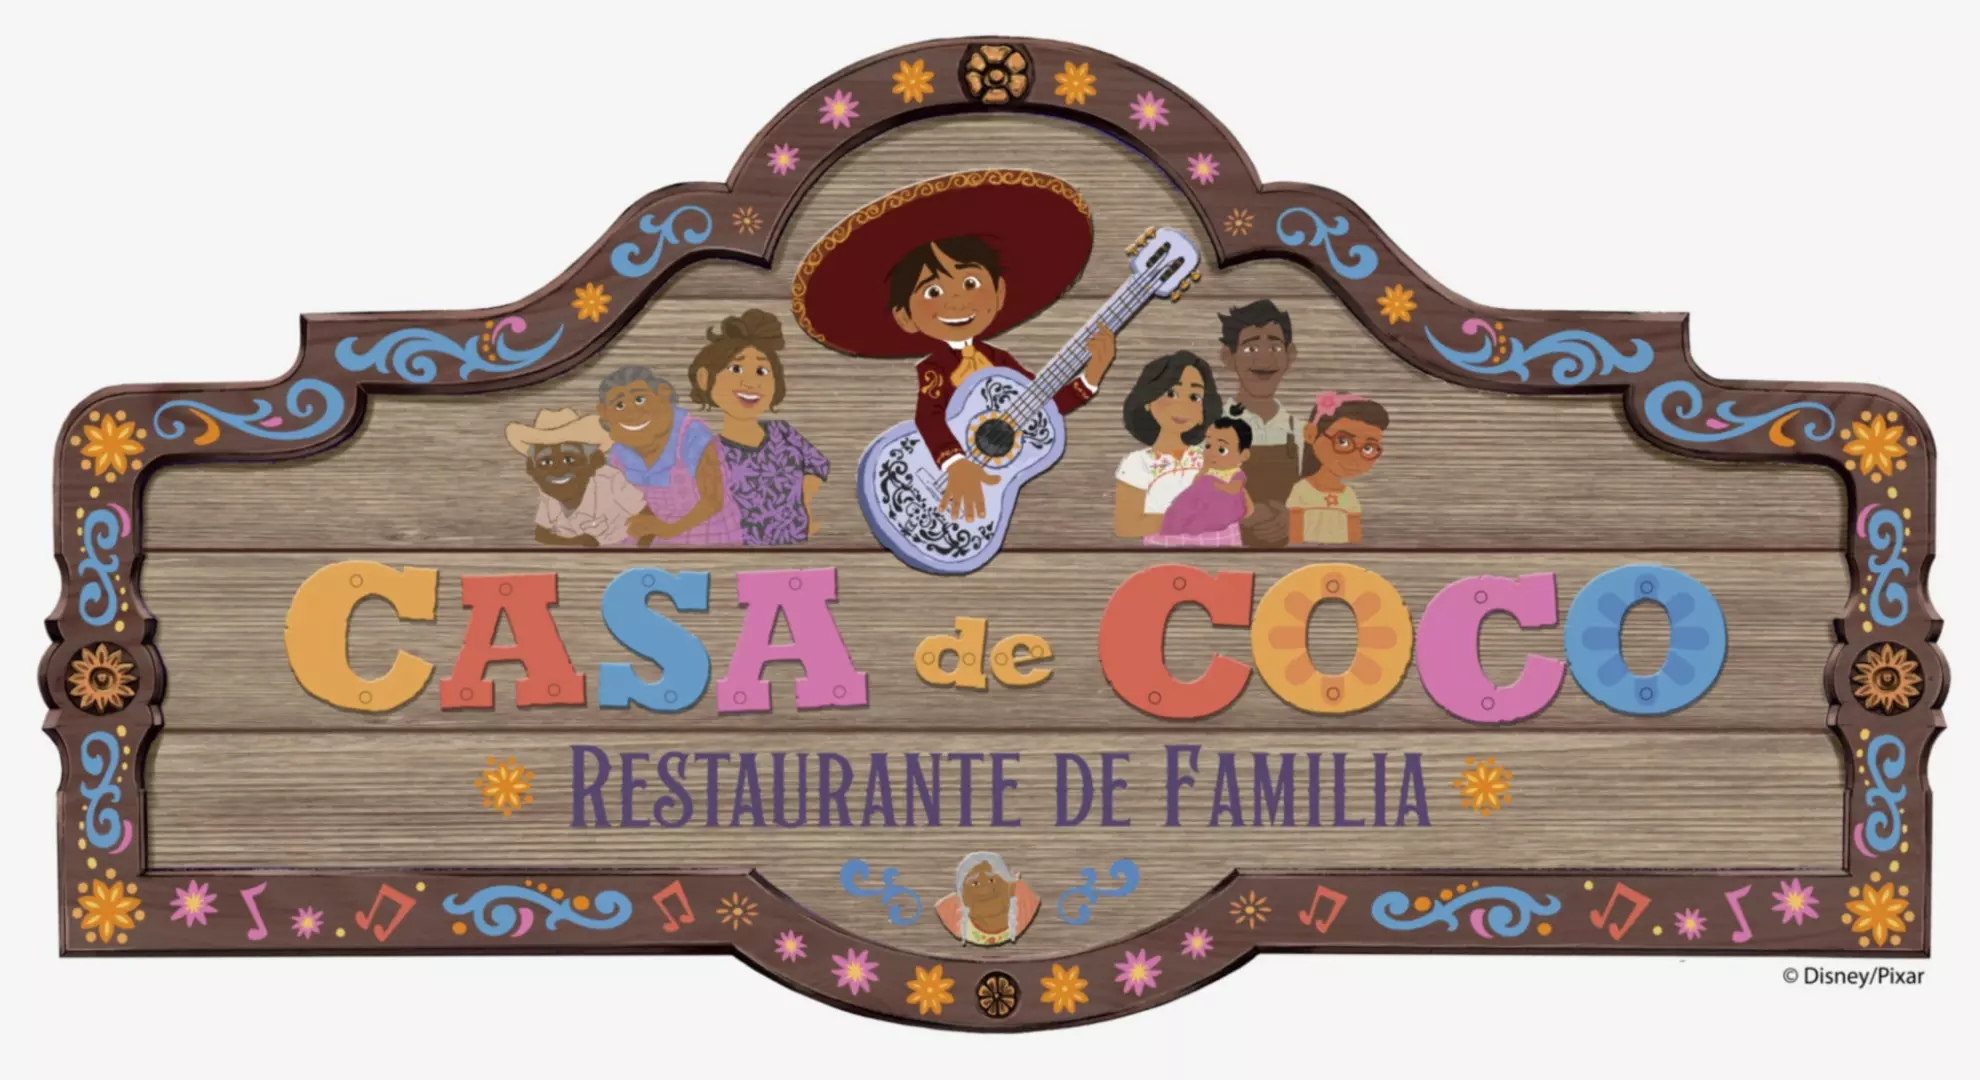 Casa coco restaurant familia - Disneyland Paris